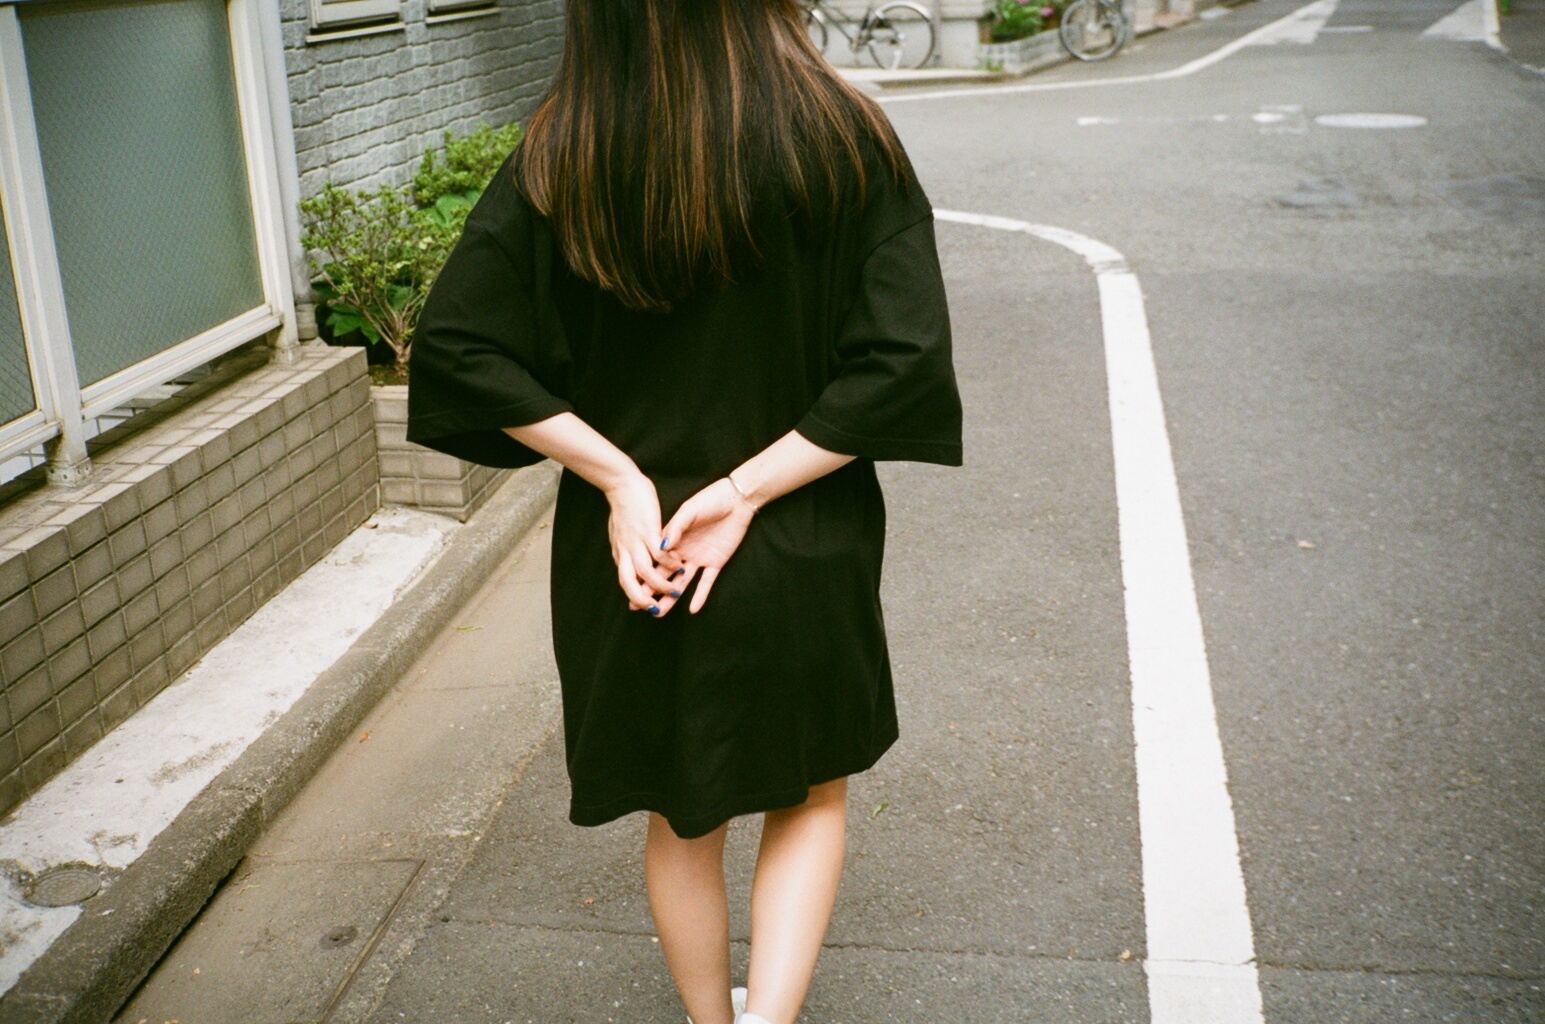 クリープハイプ ファッションブランド Keisuke Kanda とコラボ商品を発売 写真は尾崎世界観が撮り下ろし Spice エンタメ特化型情報メディア スパイス